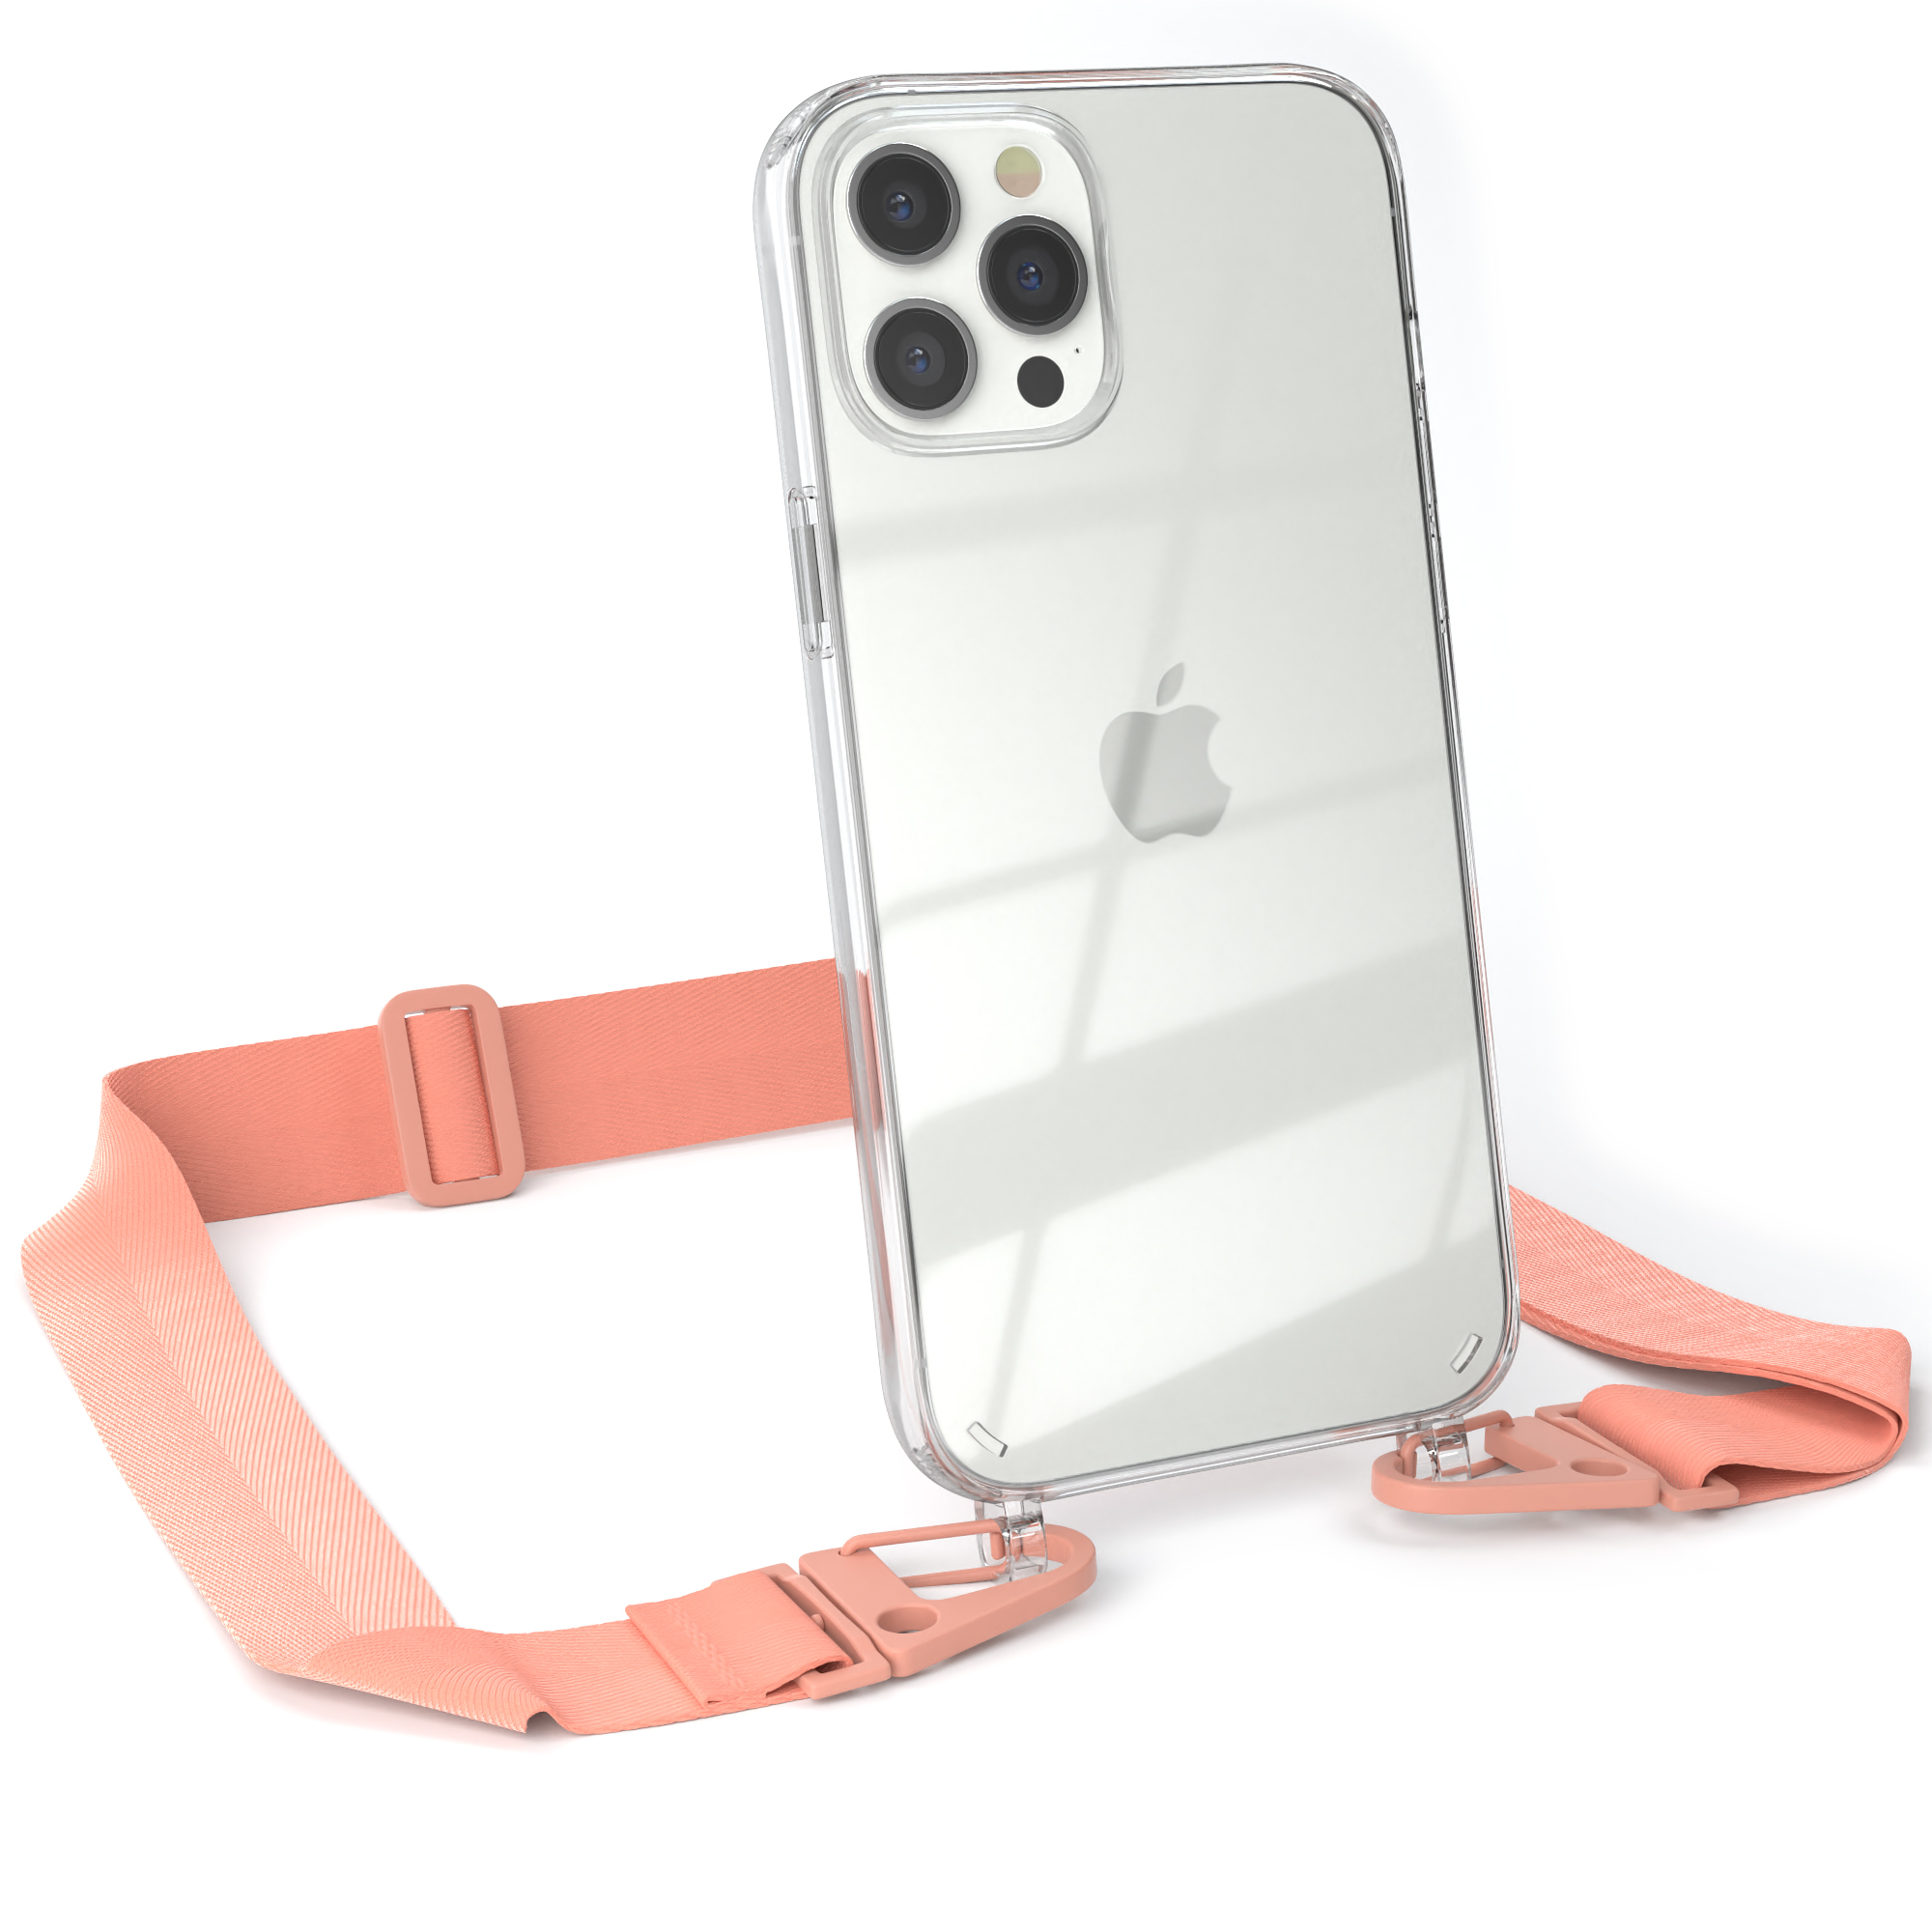 EAZY CASE Pro / iPhone Altrosa Max, Transparente breiter mit 12 + Apple, Umhängetasche, Handyhülle Karabiner, Coral Kordel